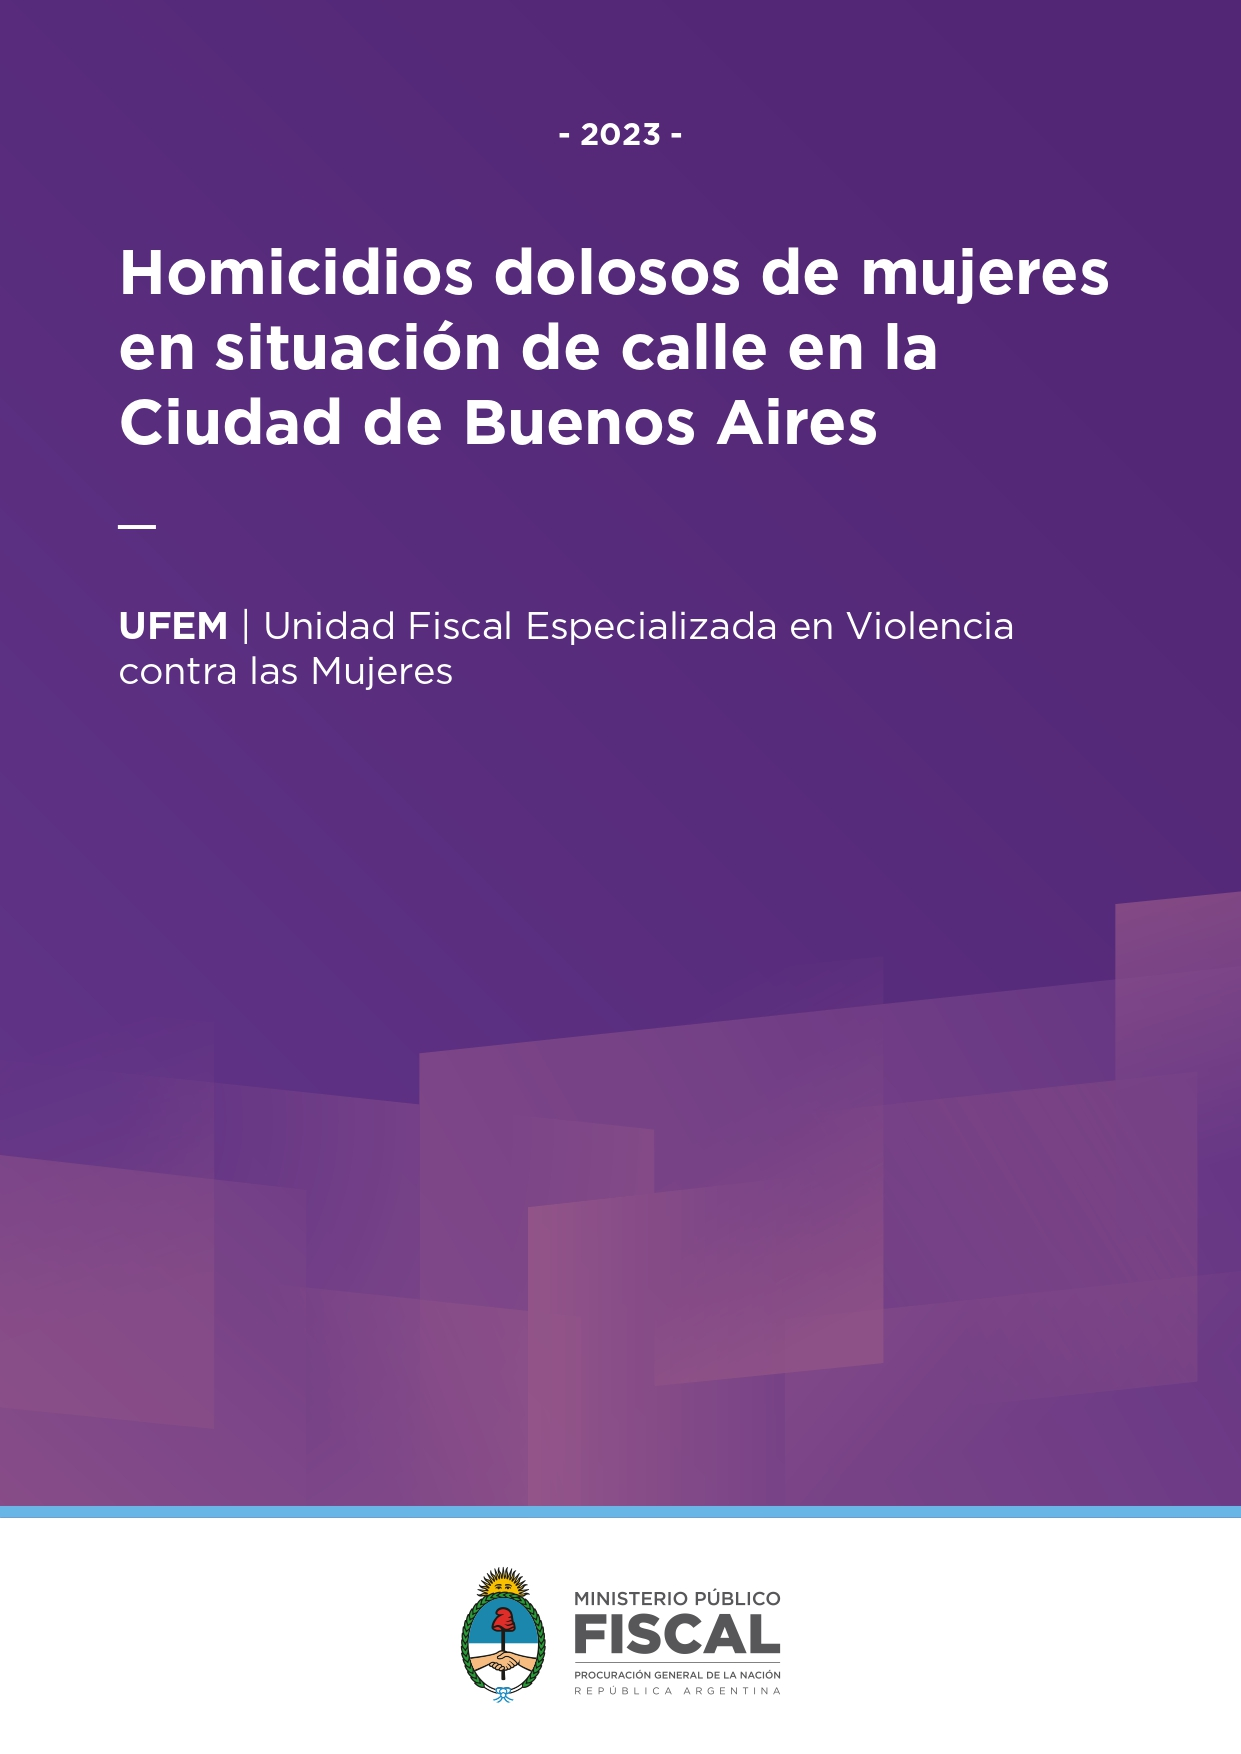 Homicidios dolosos de mujeres en situación de calle en la Ciudad Autónoma de Buenos Aires